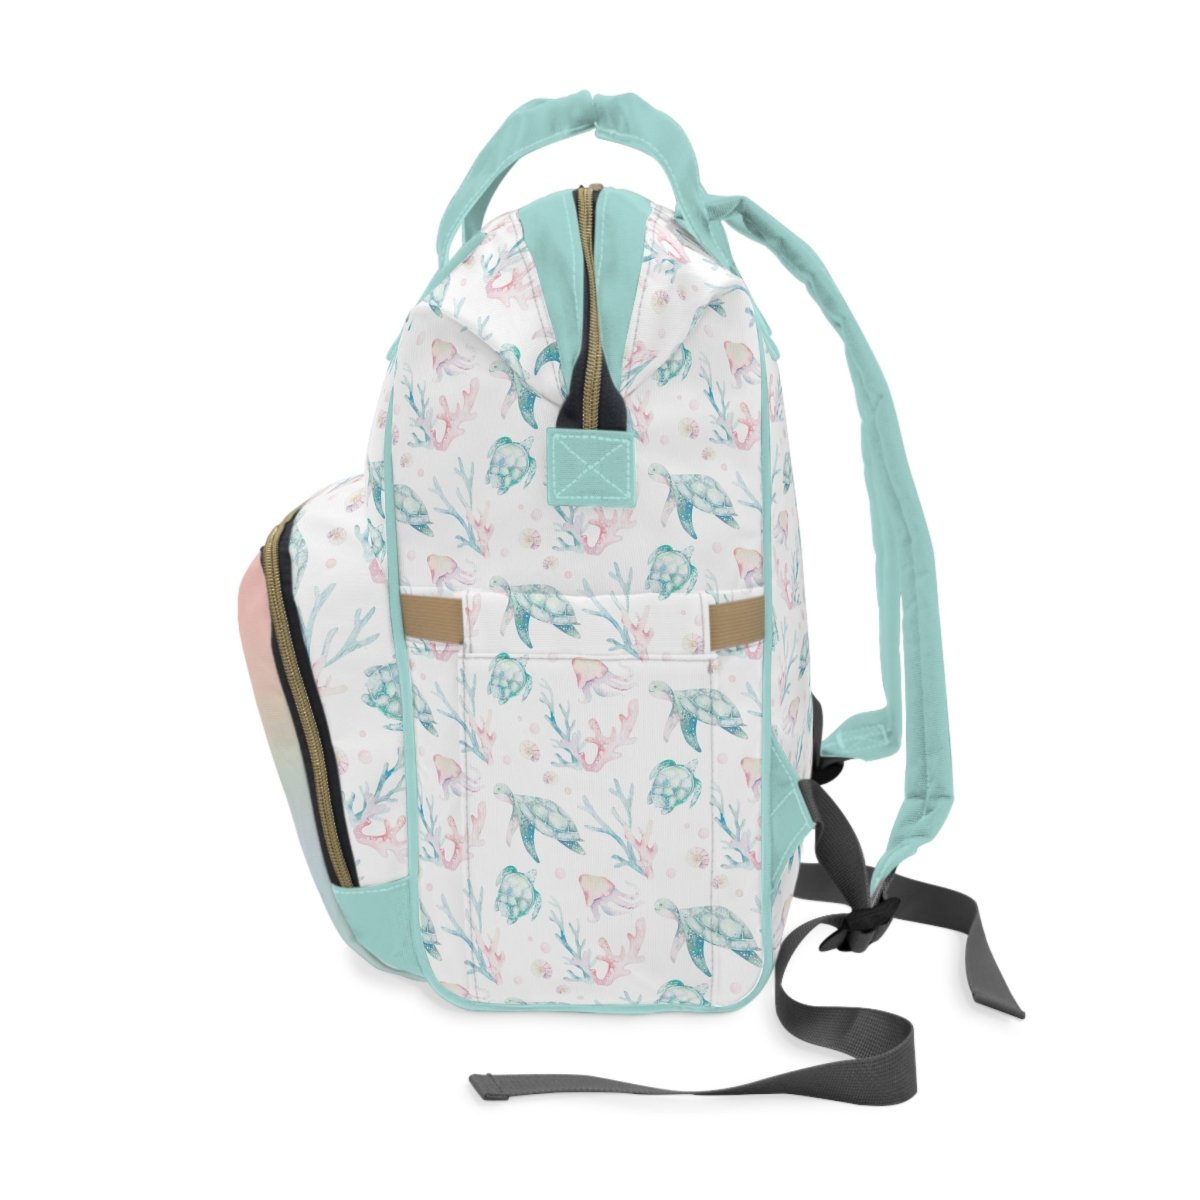 Sweet Sea Turtles Personalized Backpack Diaper Bag - gender_boy, gender_girl, gender_neutral